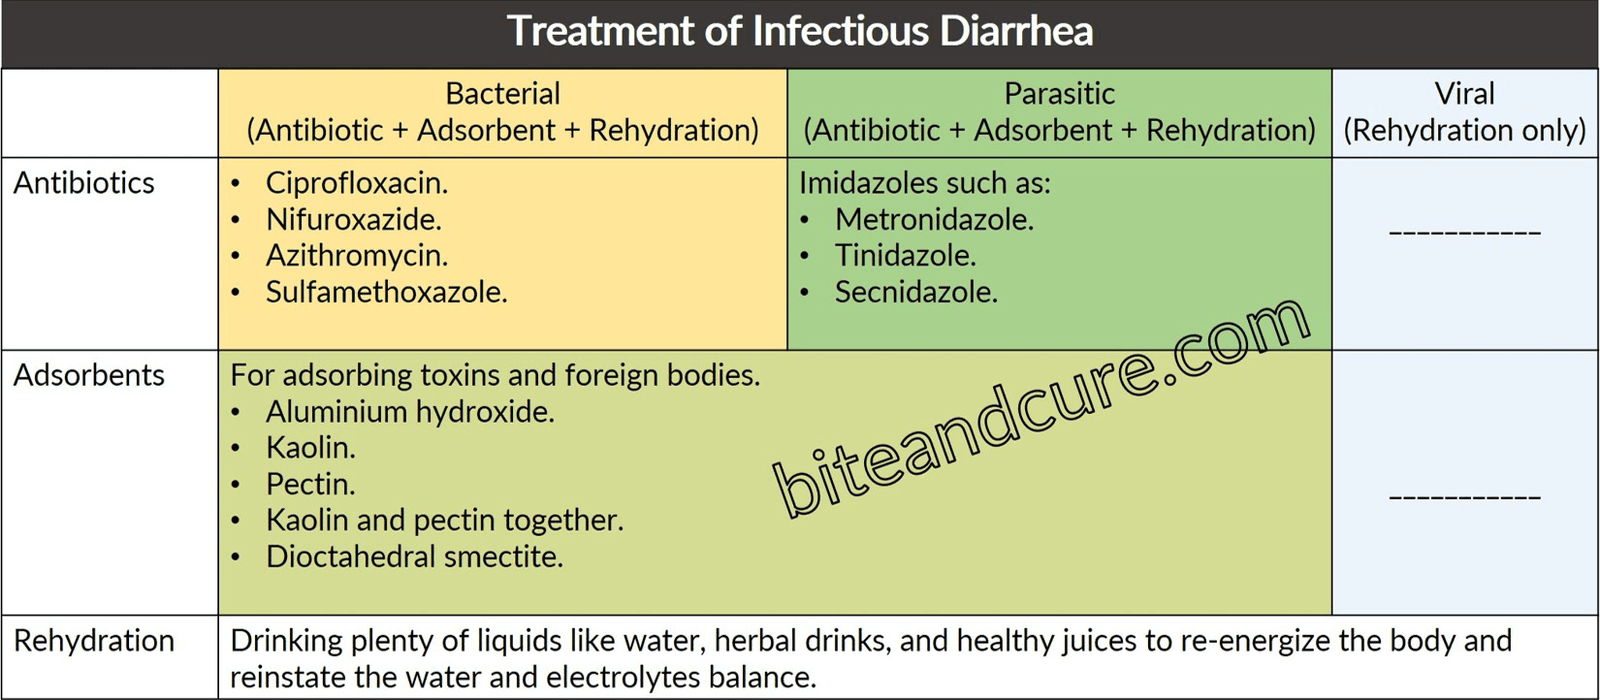 Treatment of Infectious Diarrhea